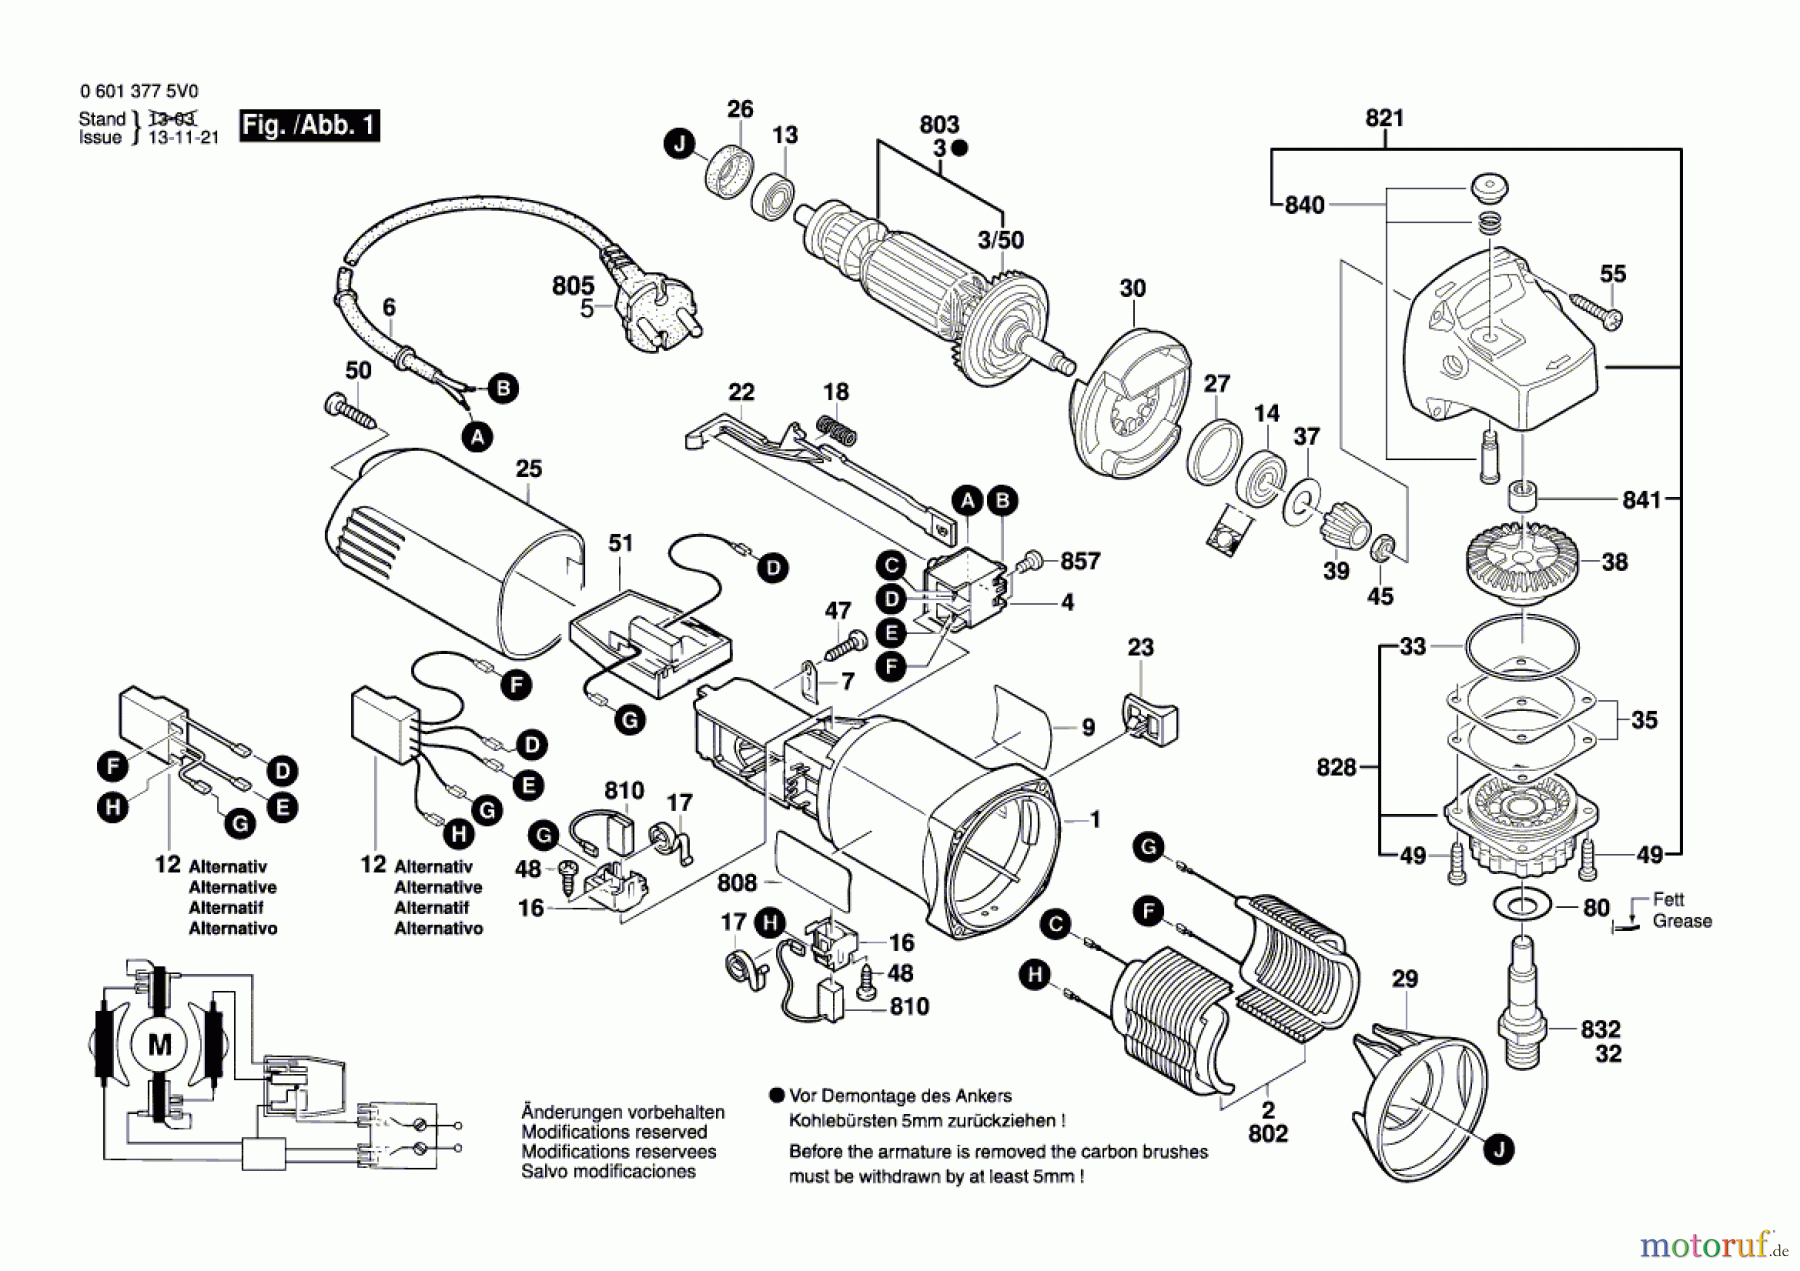  Bosch Werkzeug Winkelschleifer GWS 8-125 C Seite 1